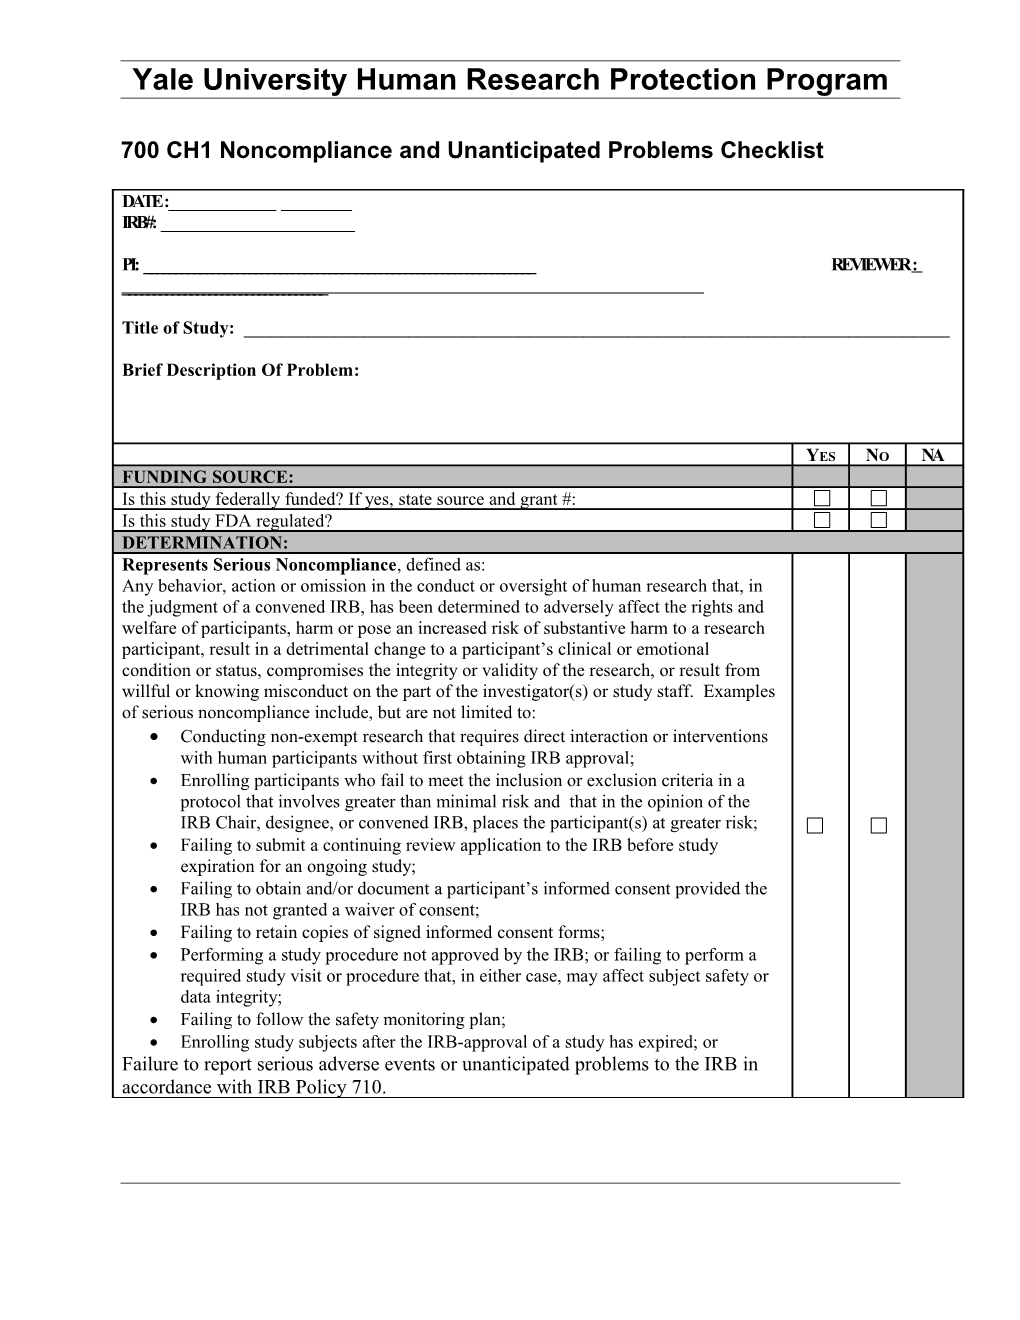 700 CH 1 Noncompliance and Unanticipated Problems Checklist